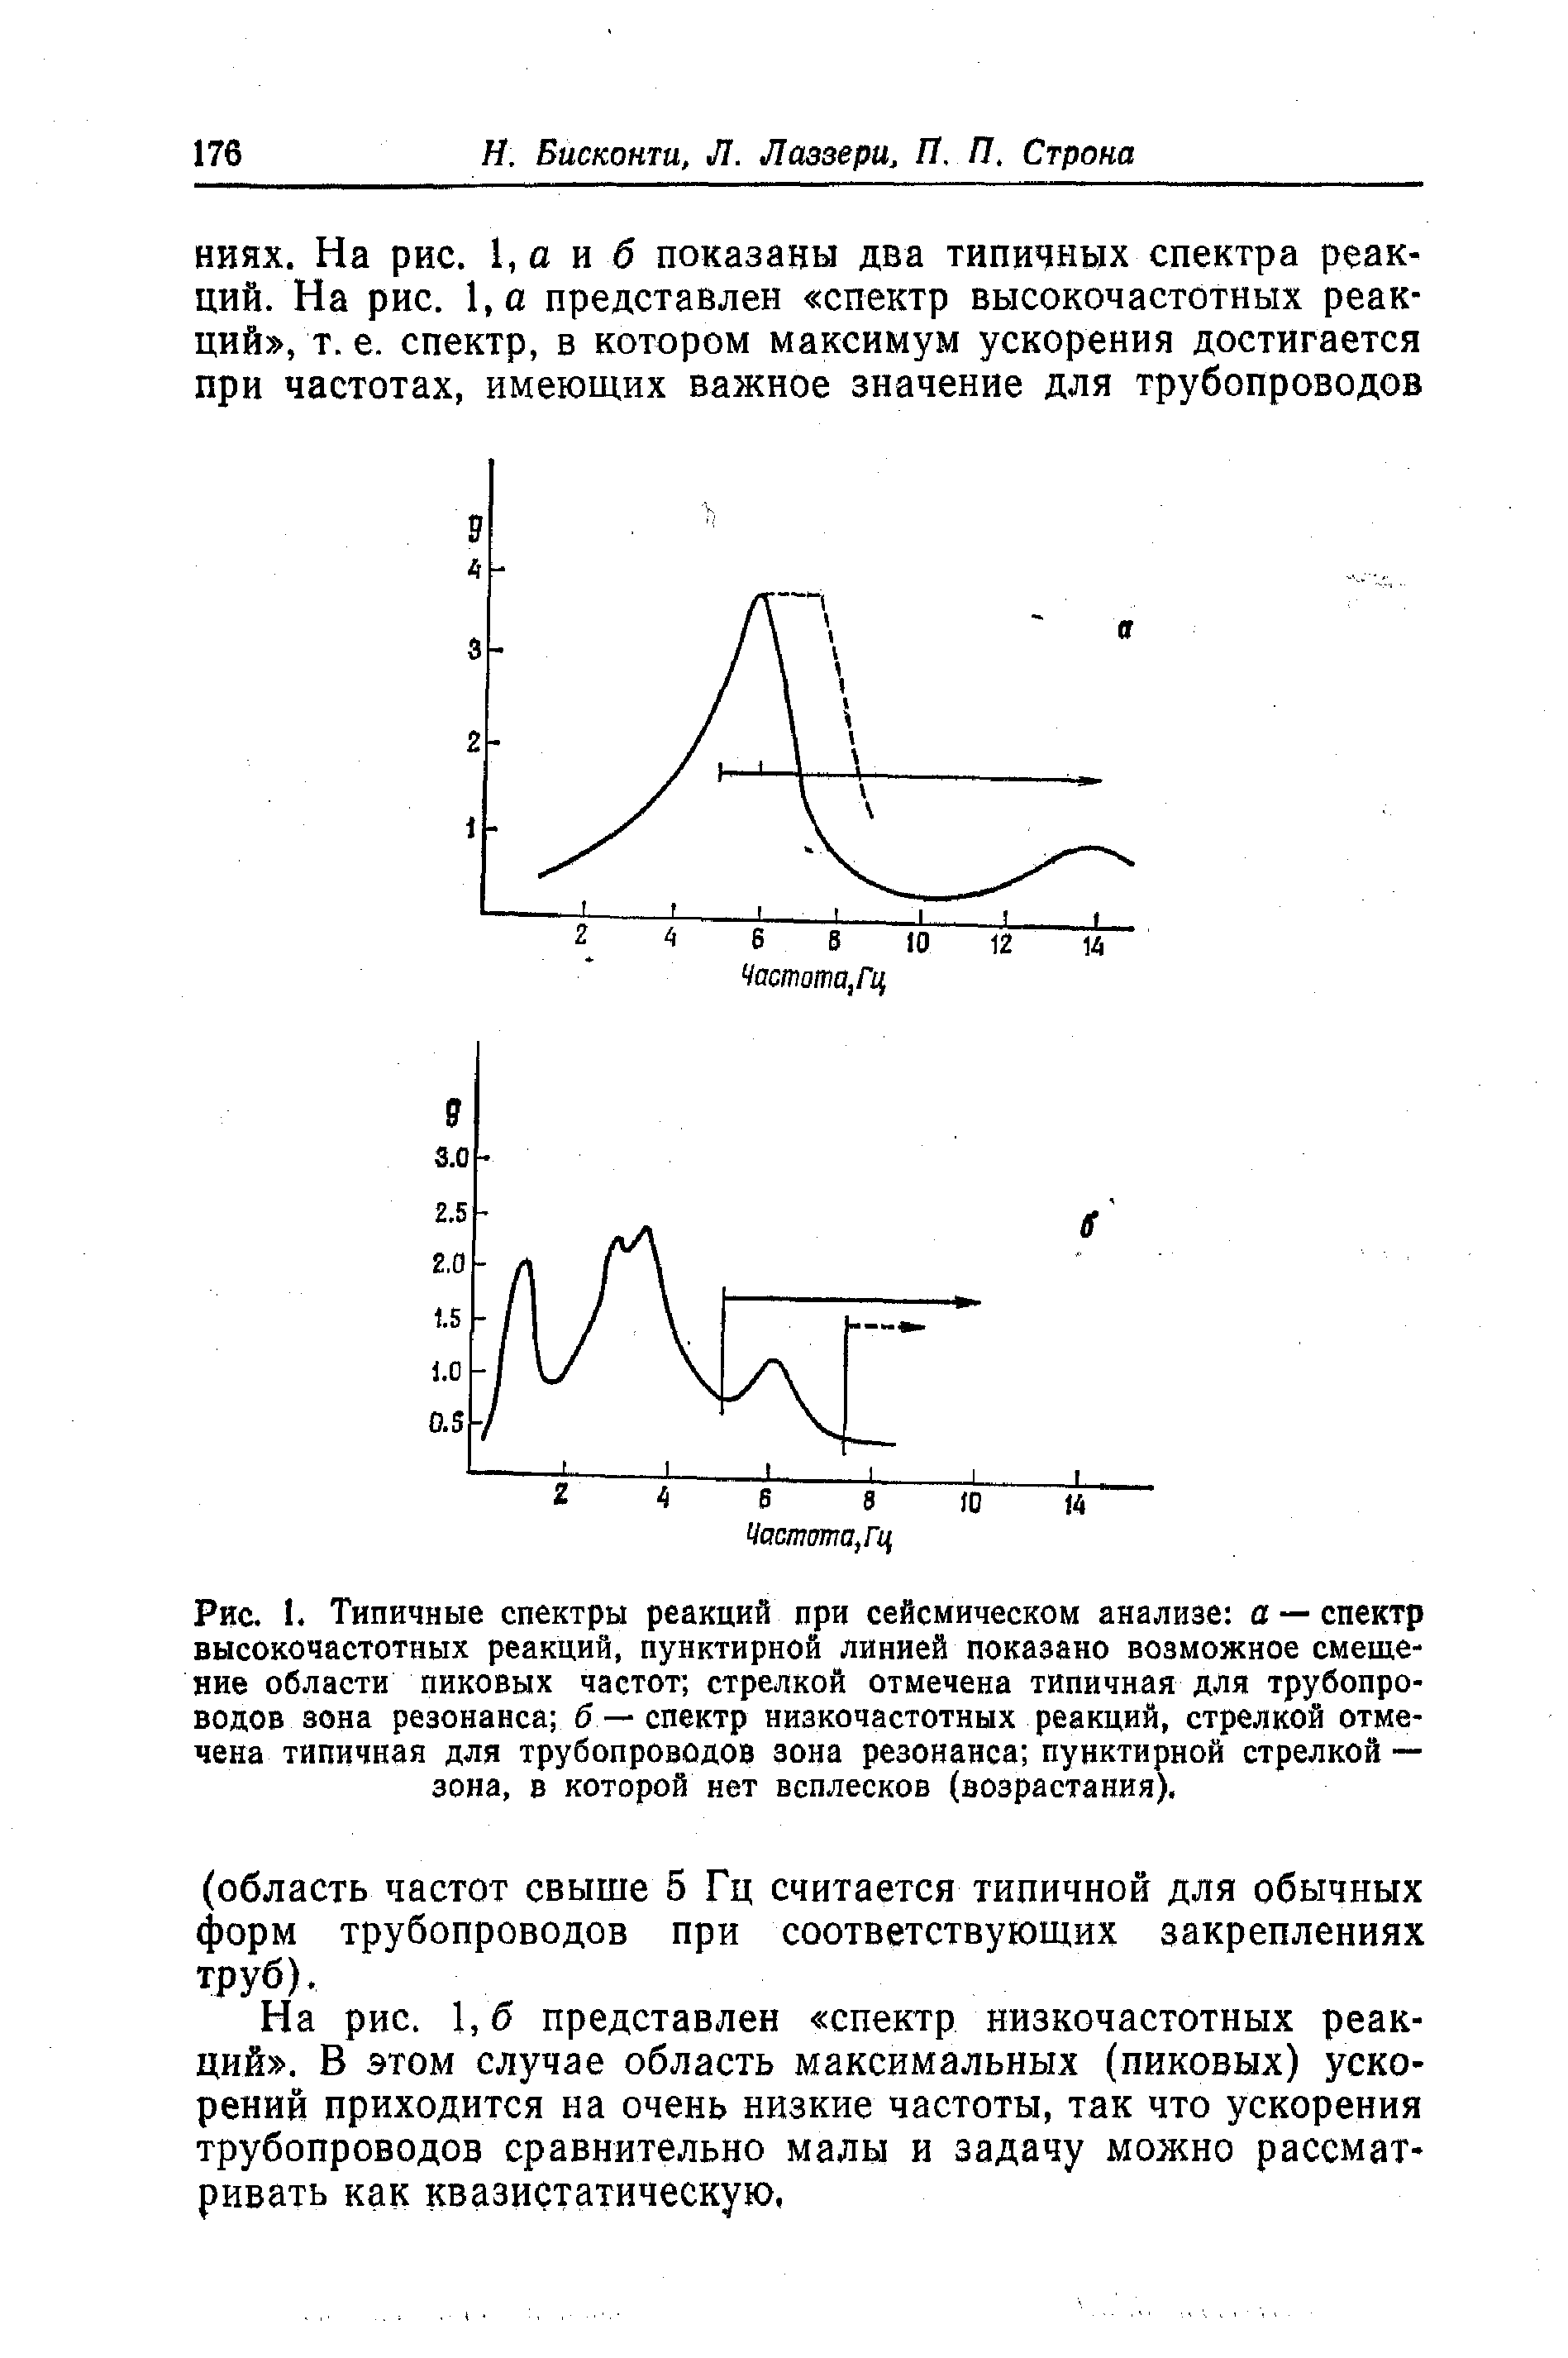 Рис. 1. Типичные спектры реакций при сейсмическом анализе а — спектр высокочастотных реакций, пунктирной линией показано возможное смещение области пиковых частот стрелкой отмечена типичная для трубопроводов зона резонанса б — спектр низкочастотных реакций, стрелкой отмечена типичная для трубопроводов зона резонанса пунктирной стрелкой — зона, в которой нет всплесков (возрастания).
